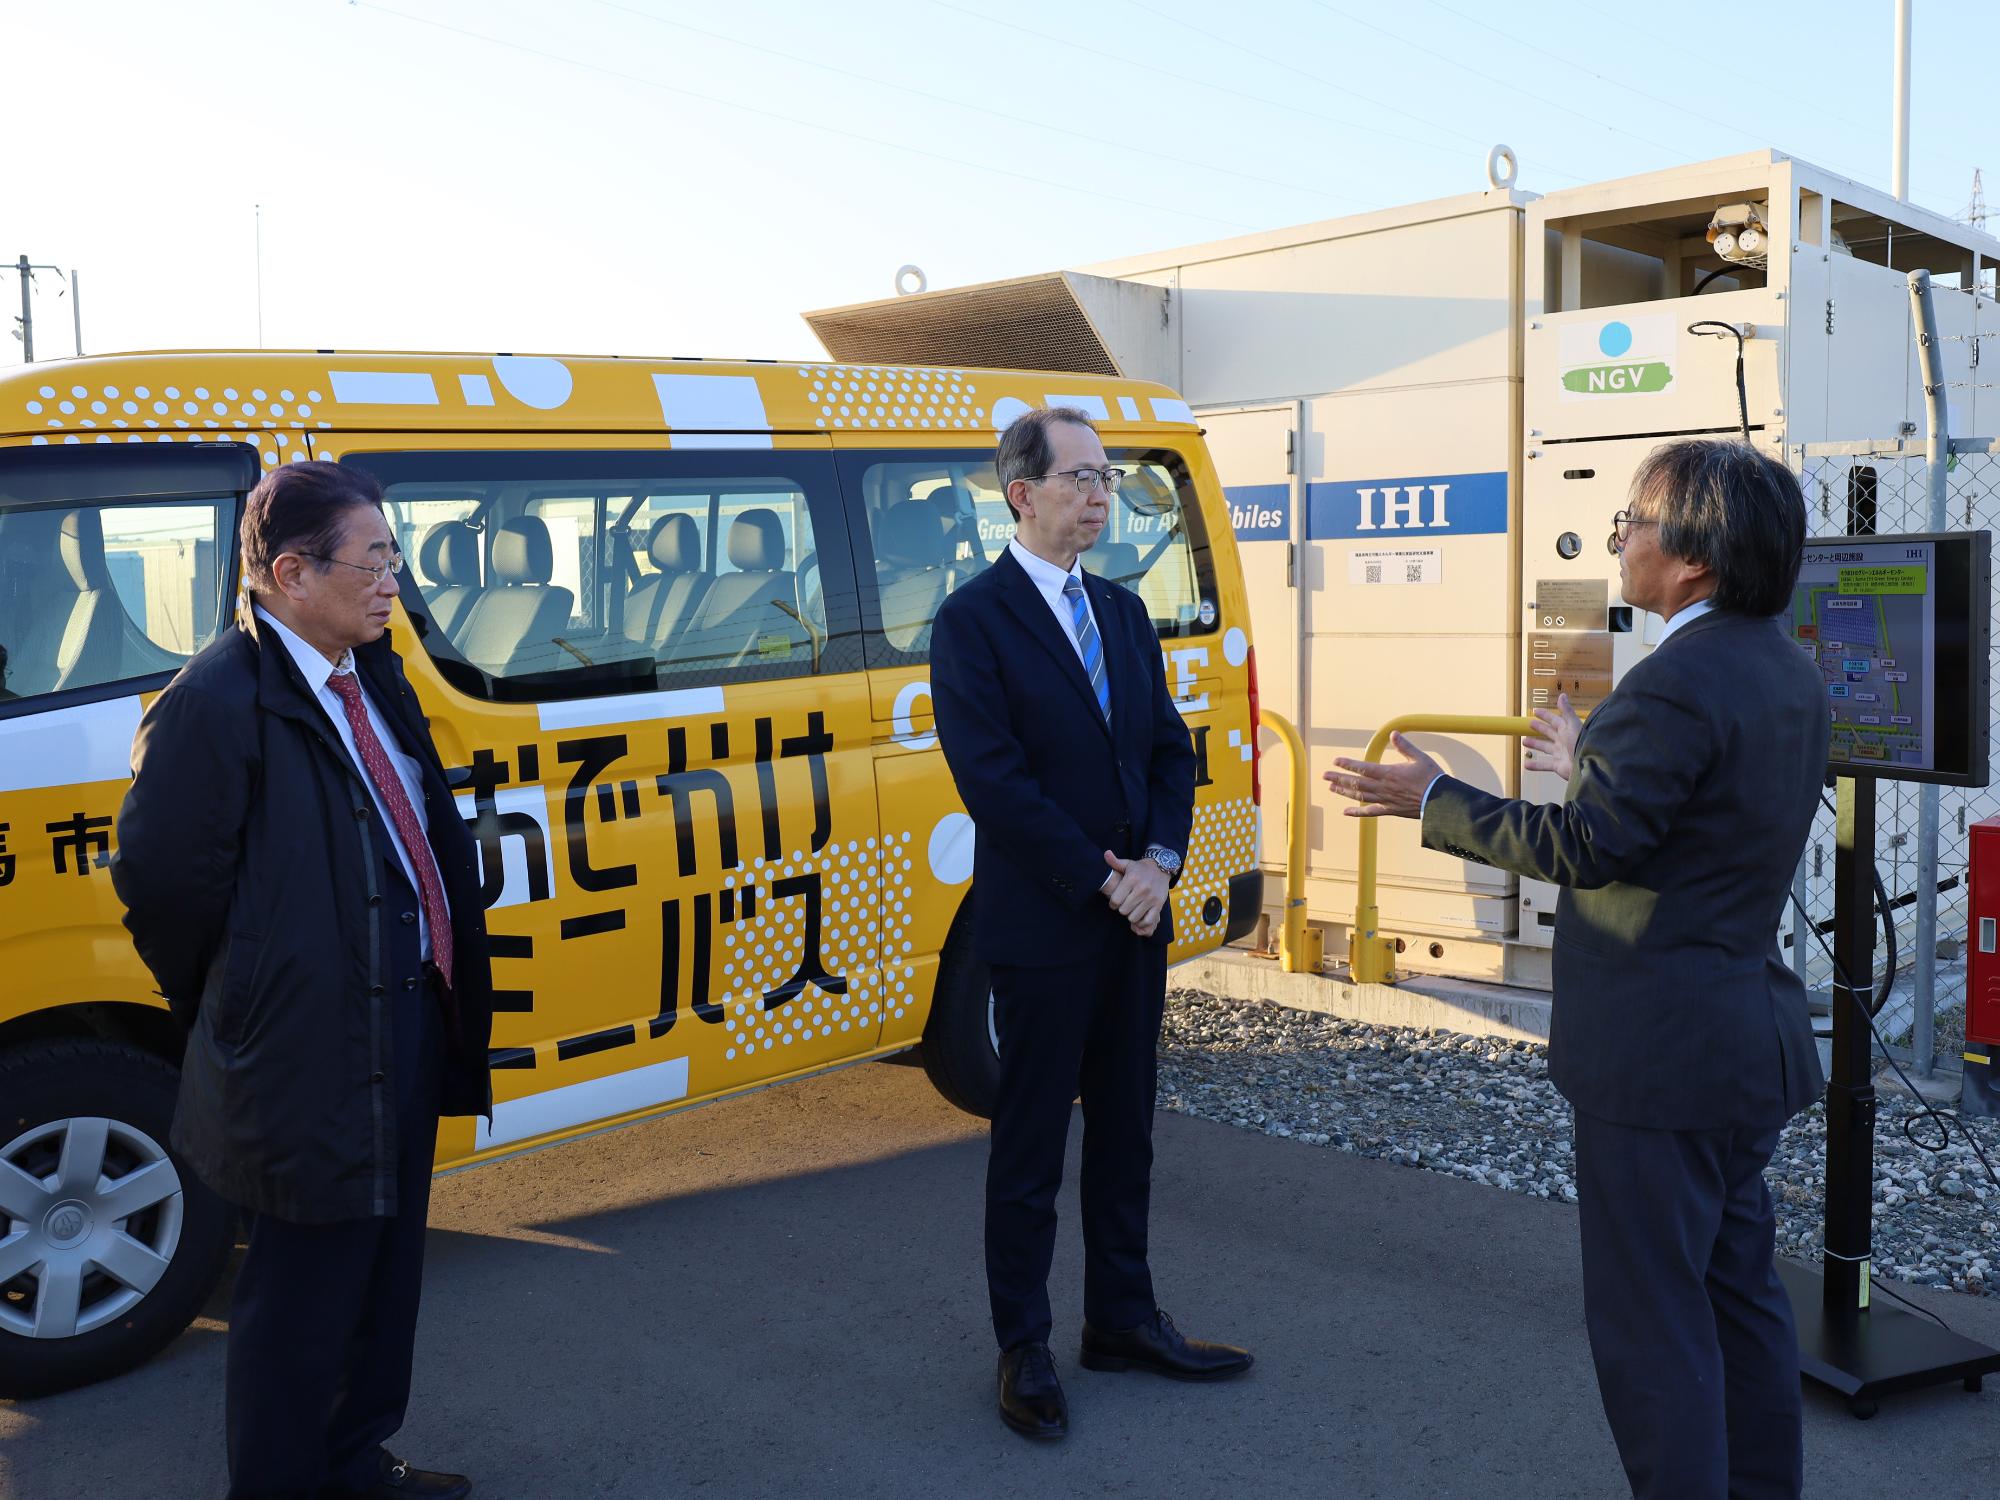 内堀雅雄県知事に対し、そうまIHIグリーンエネルギーセンターでグリーンメタンバスの運用に関する説明をする様子